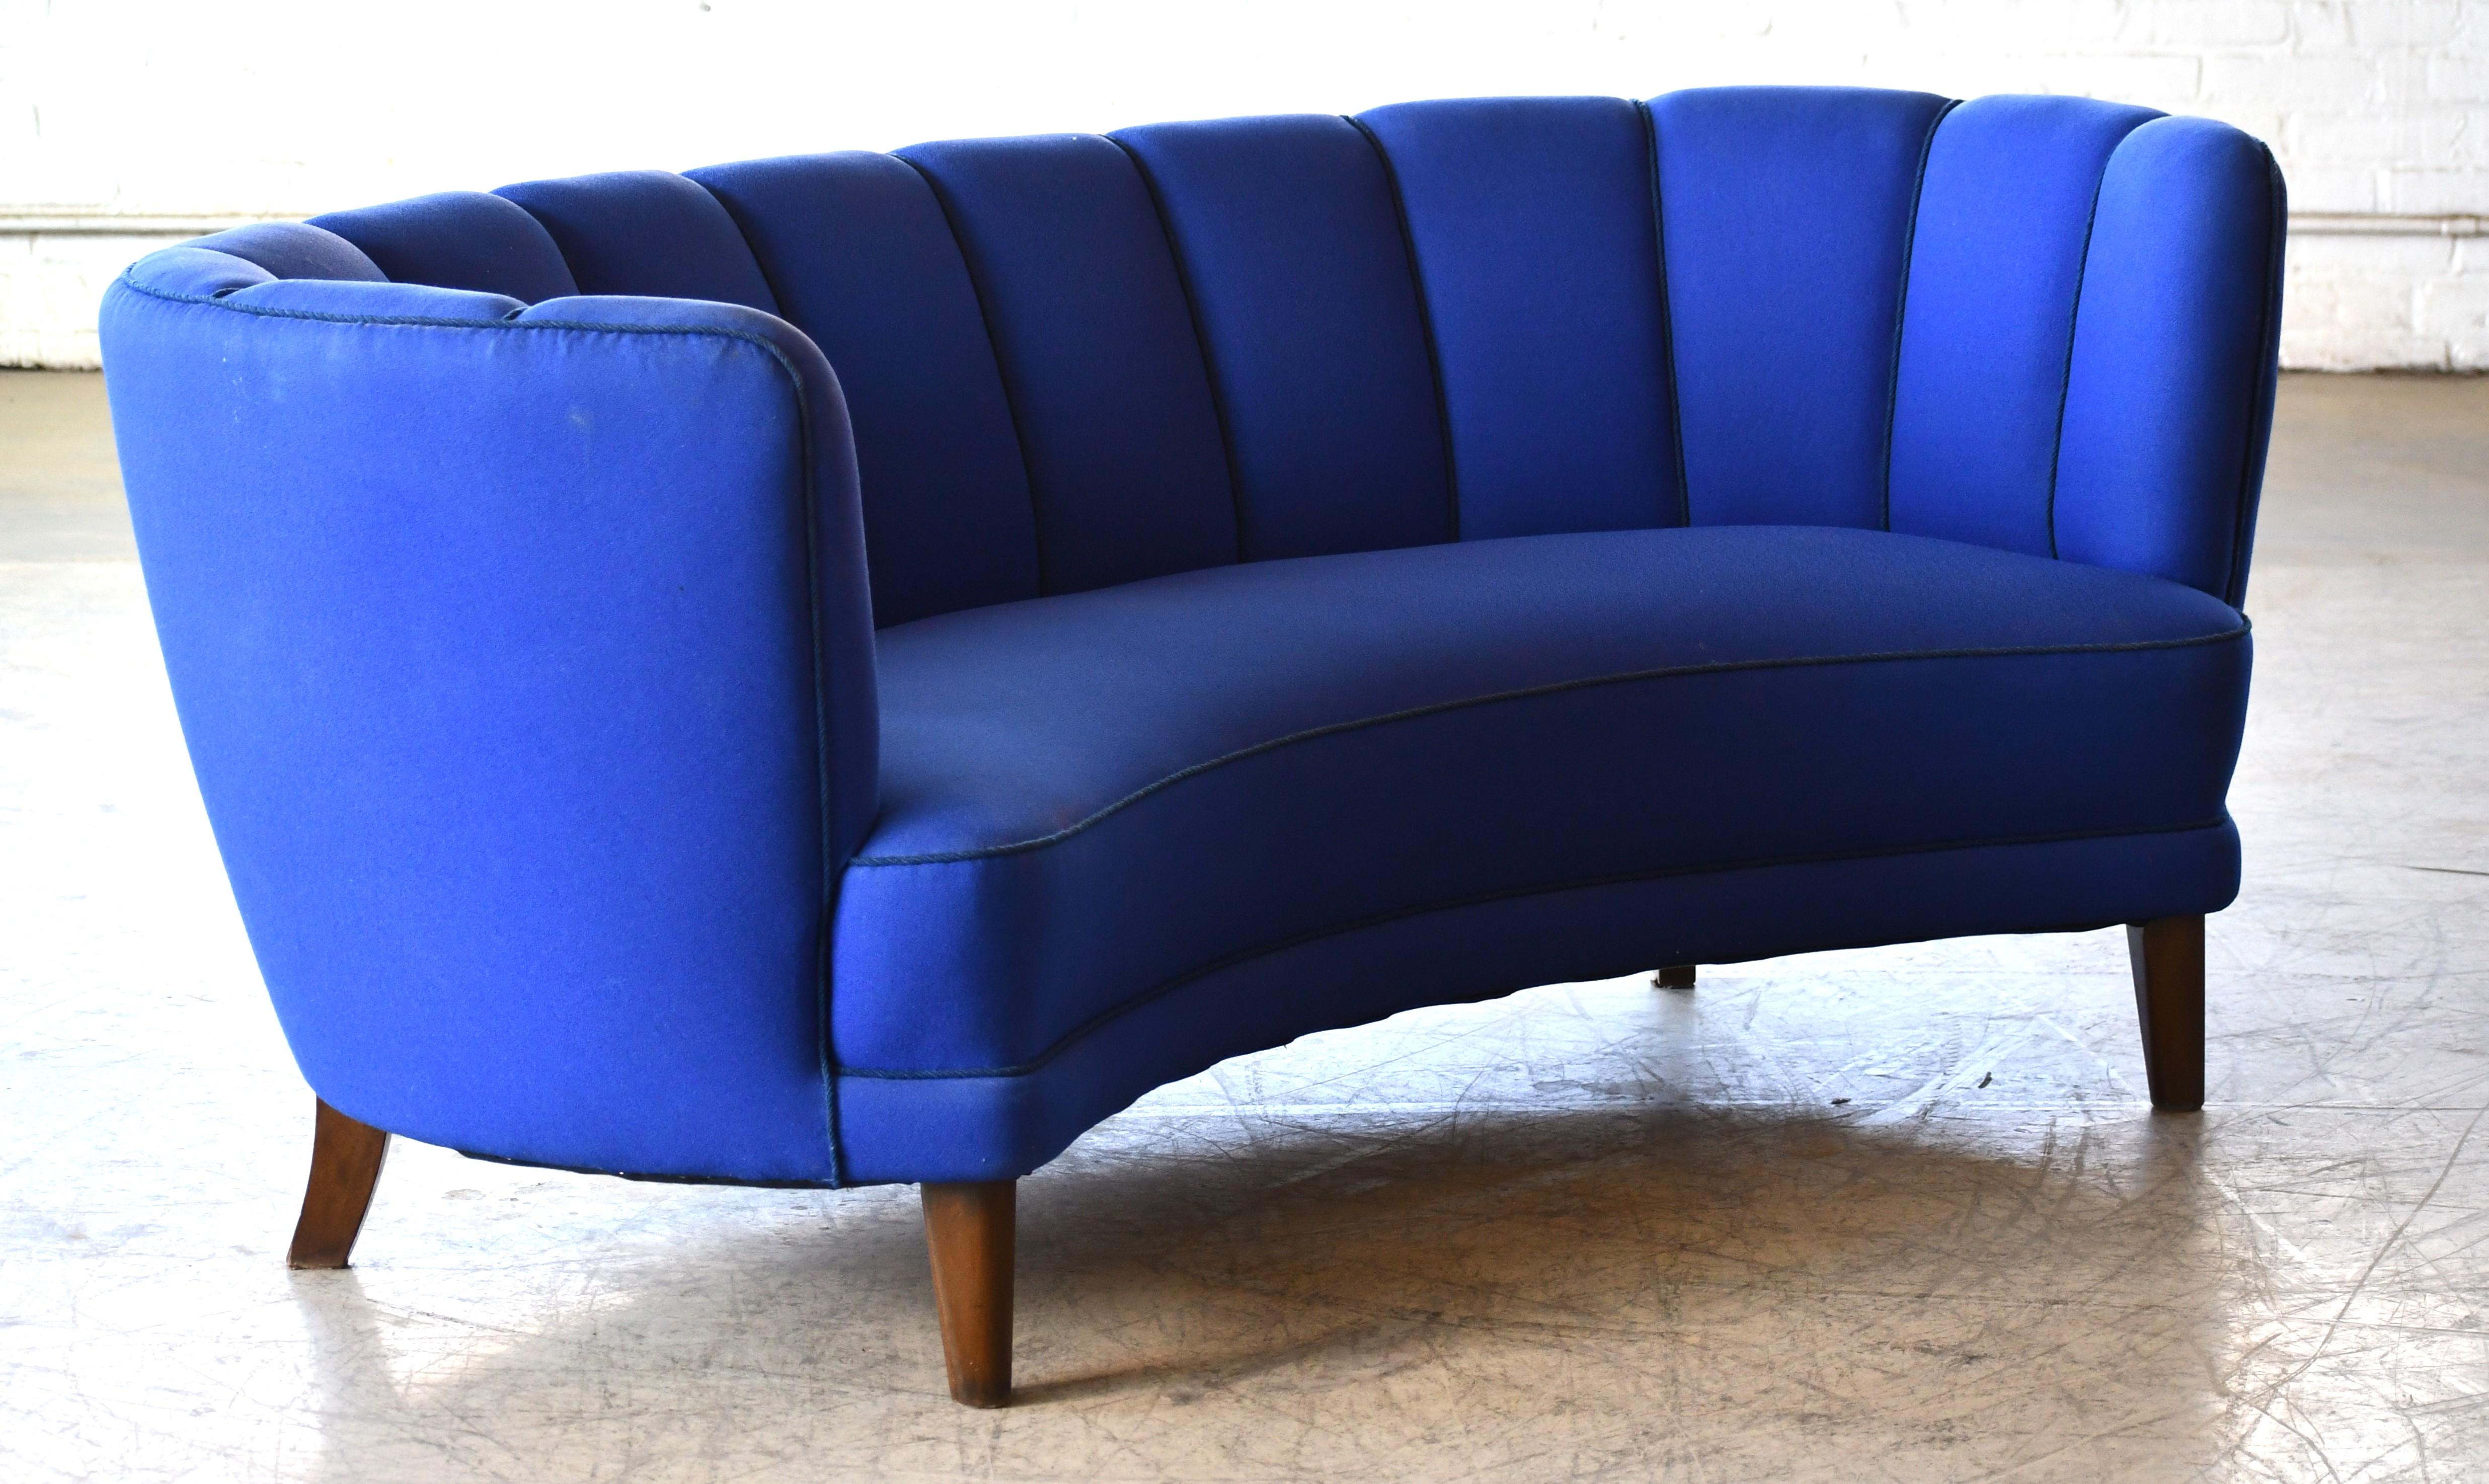 Magnifique et très élégant canapé trois places incurvé à dossier cannelé de grande taille des années 1940. Le canapé est équipé de ressorts dans l'assise et le dossier et le cadre en bois de hêtre est solide et robuste. Le tissu ajouté